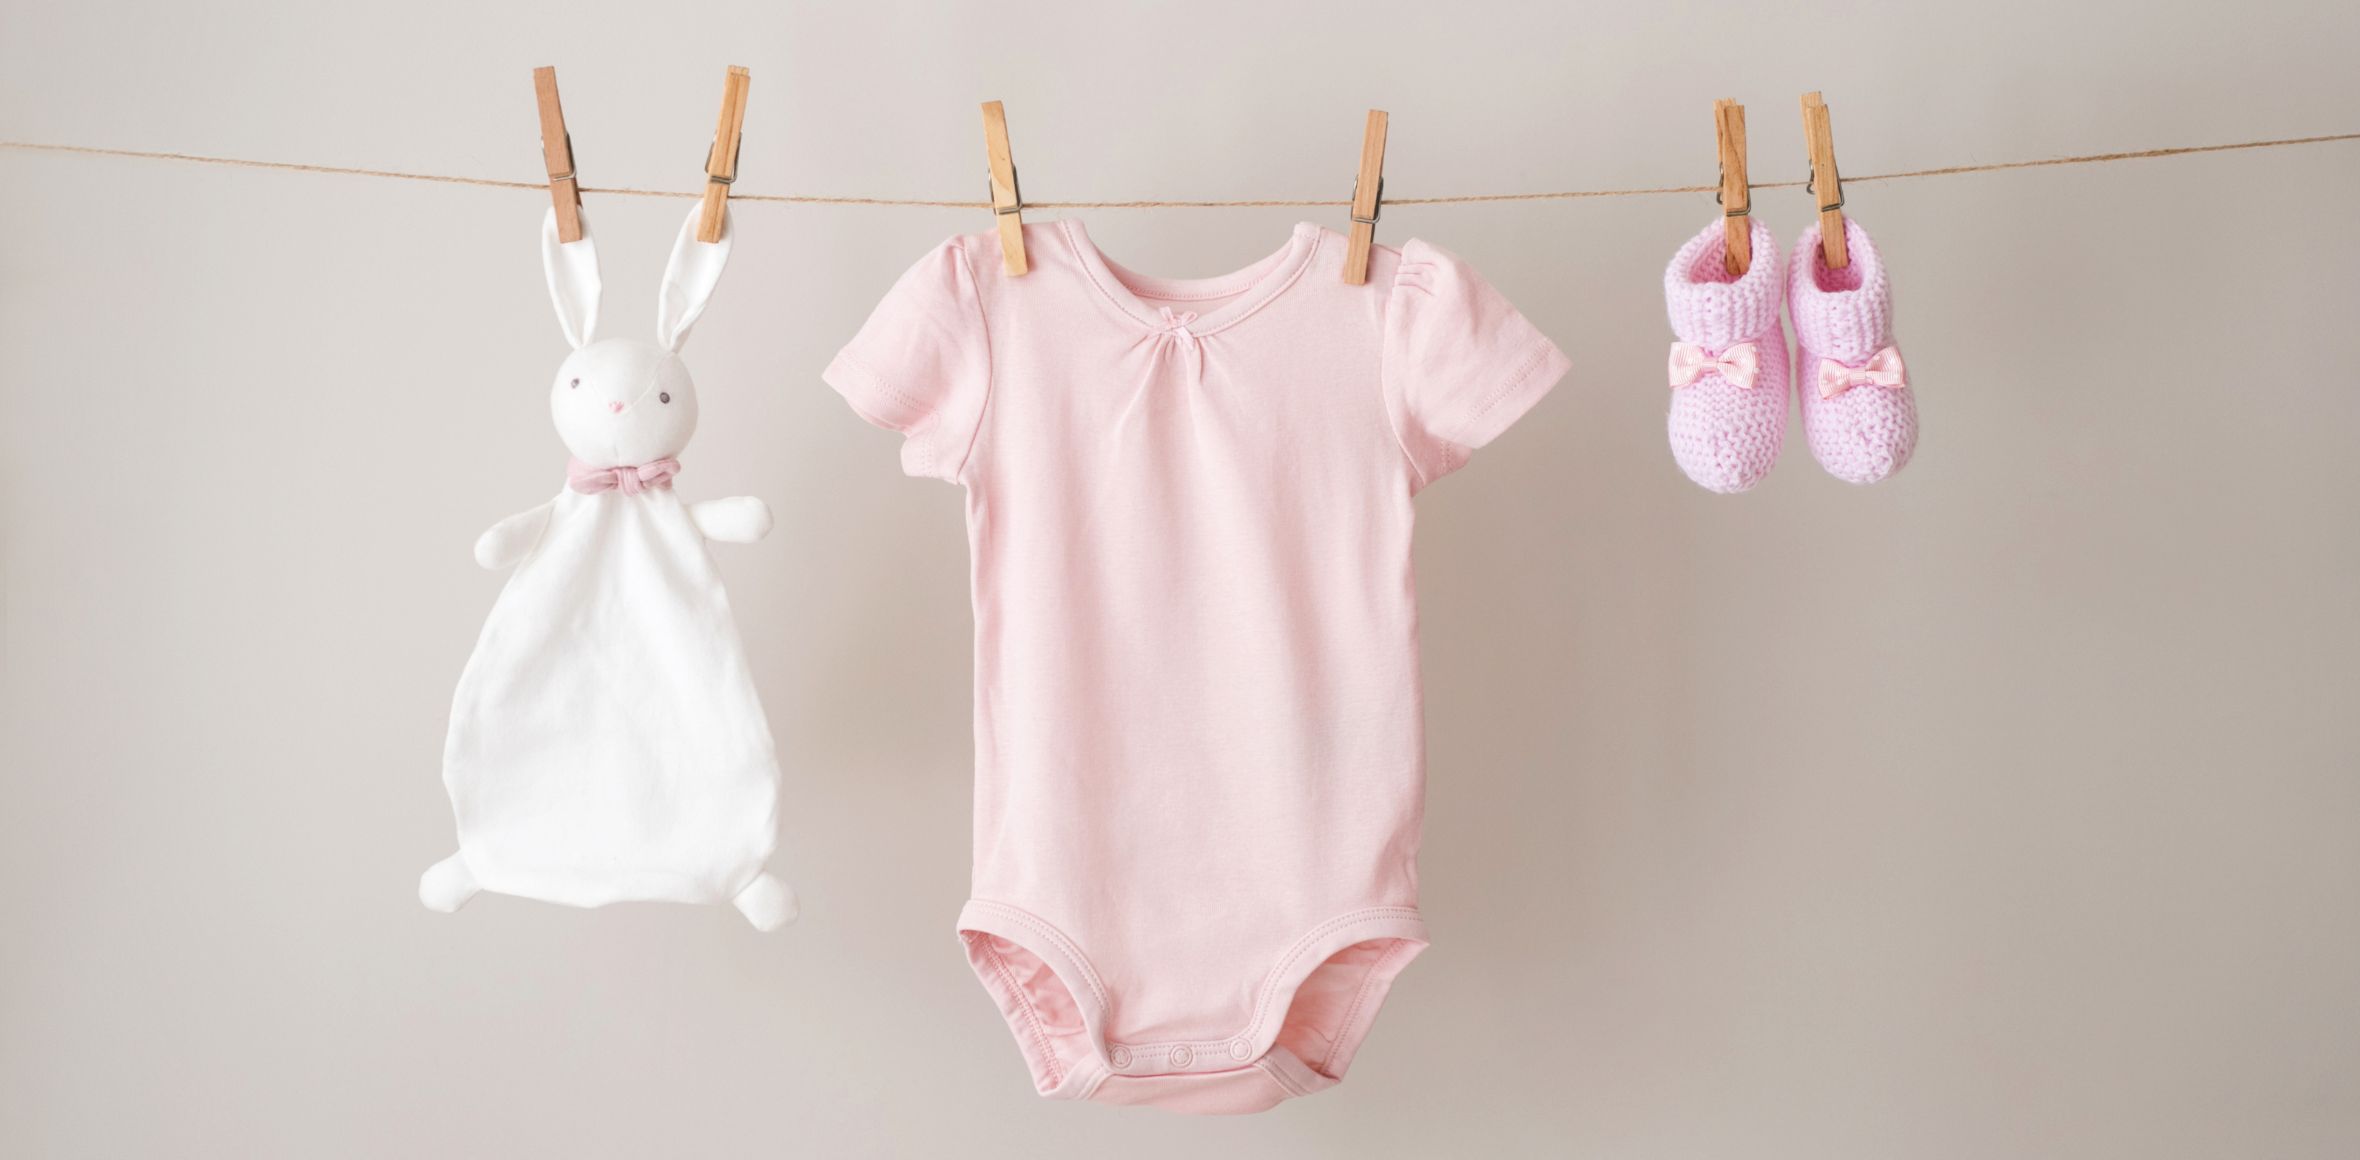 Babykleidung hängt an Wäscheleine